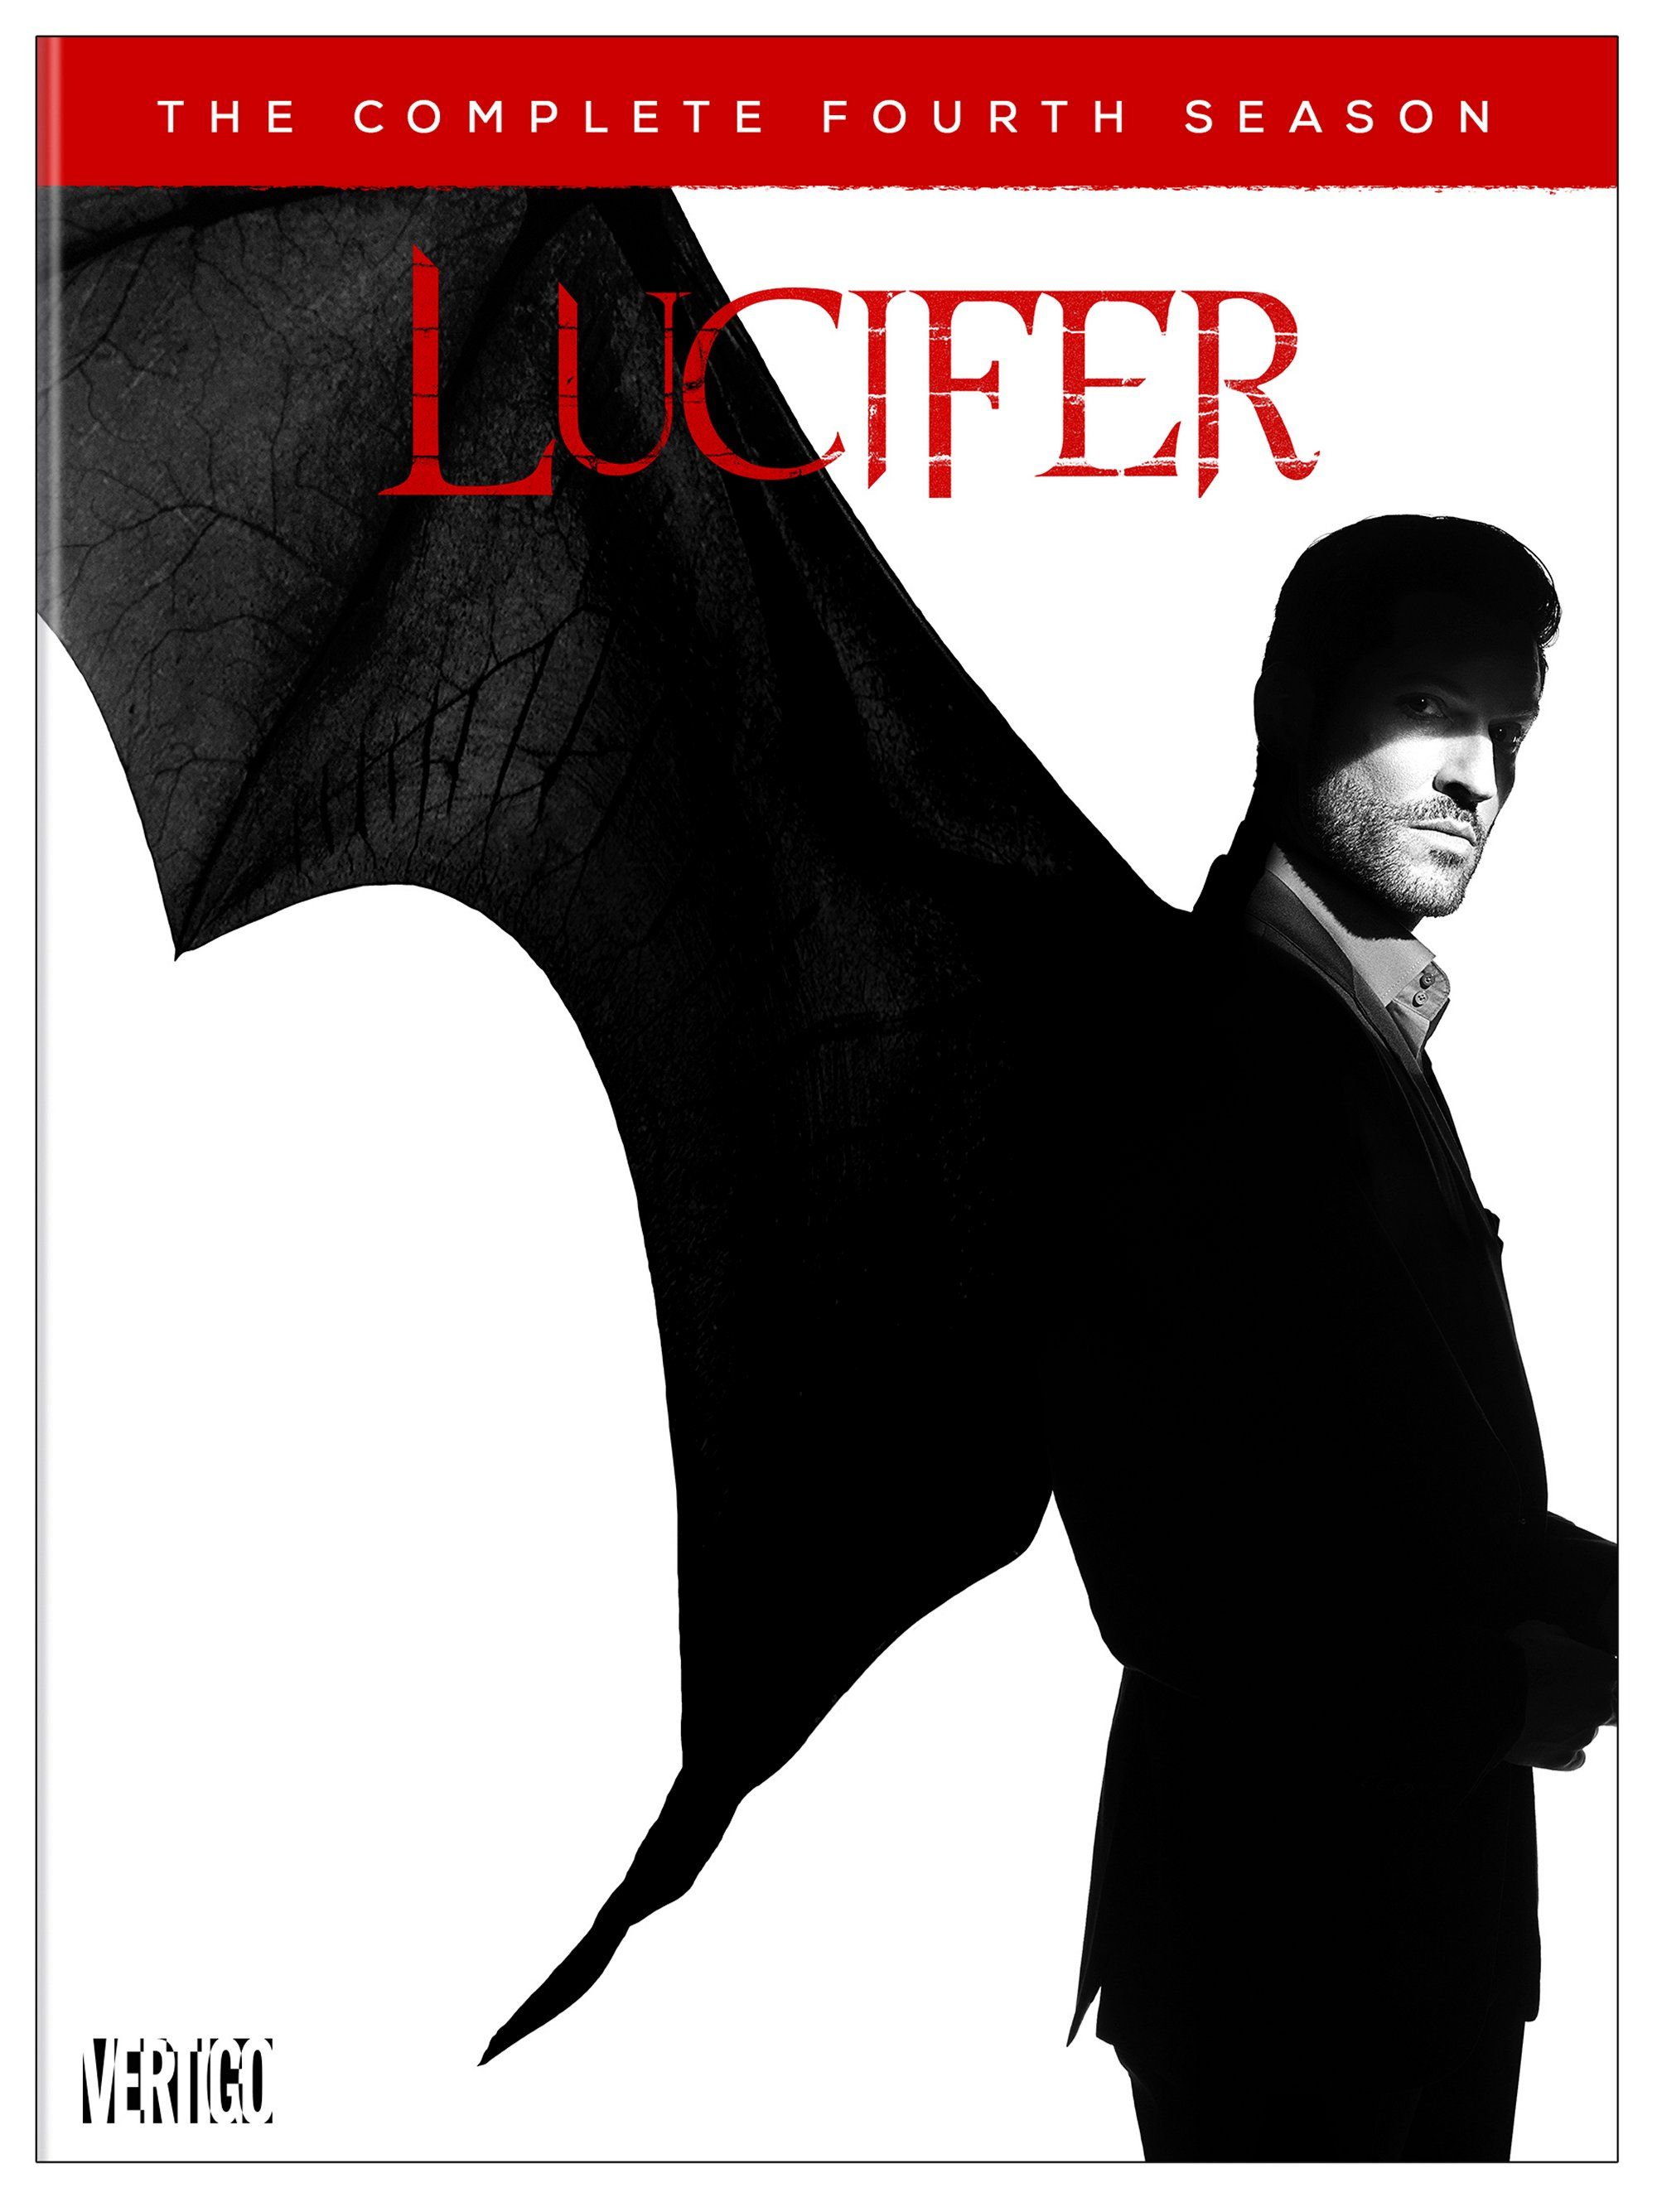 Lucifer season 4 Blu-ray